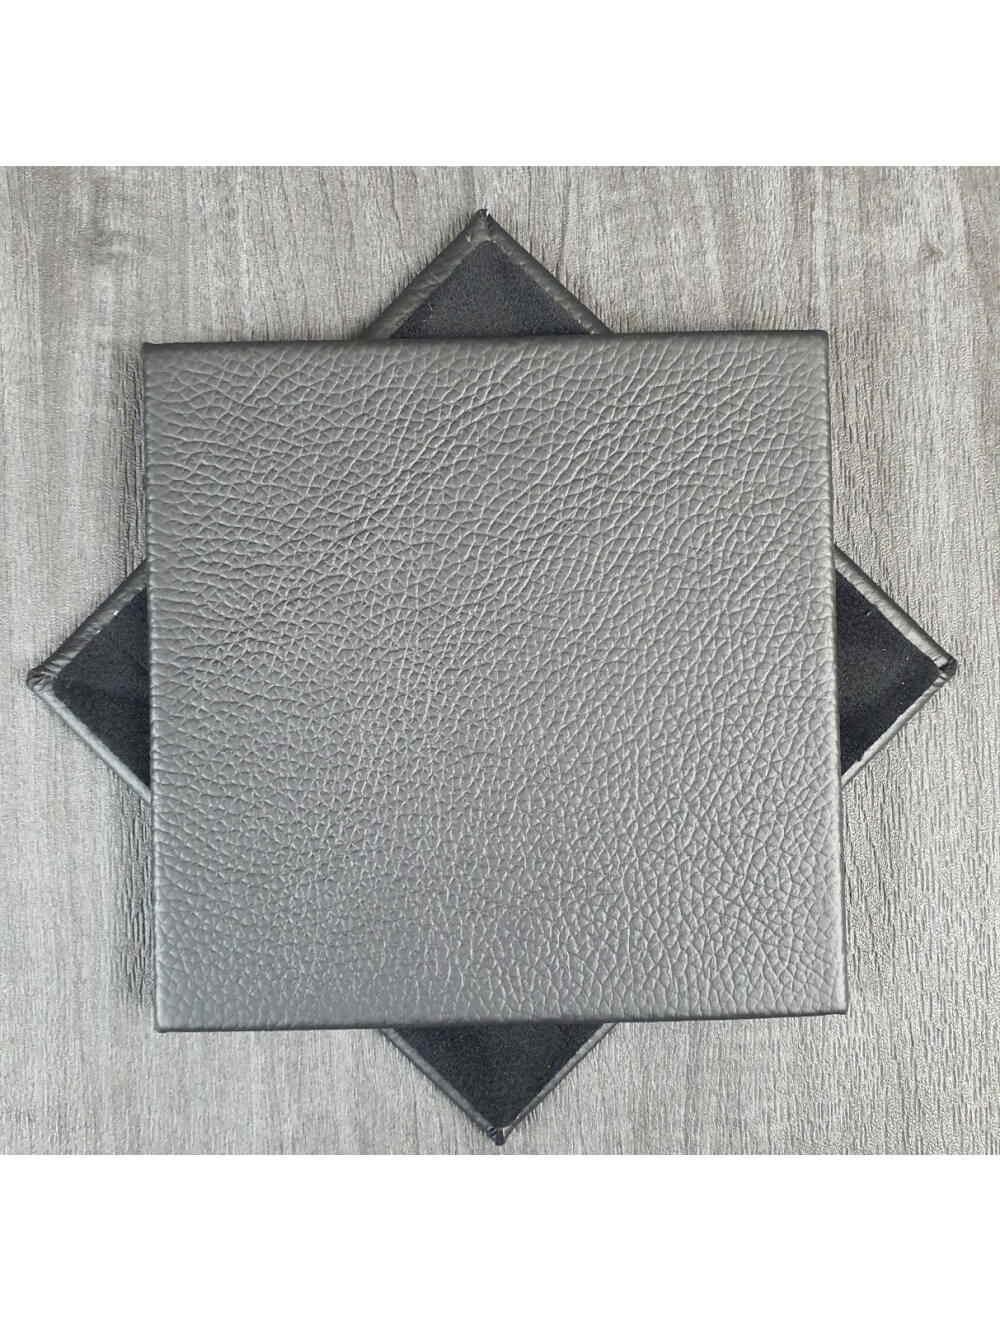 Crni Shelly kožni podmetač - 10 cm kvadratnih (prodajni artikl)